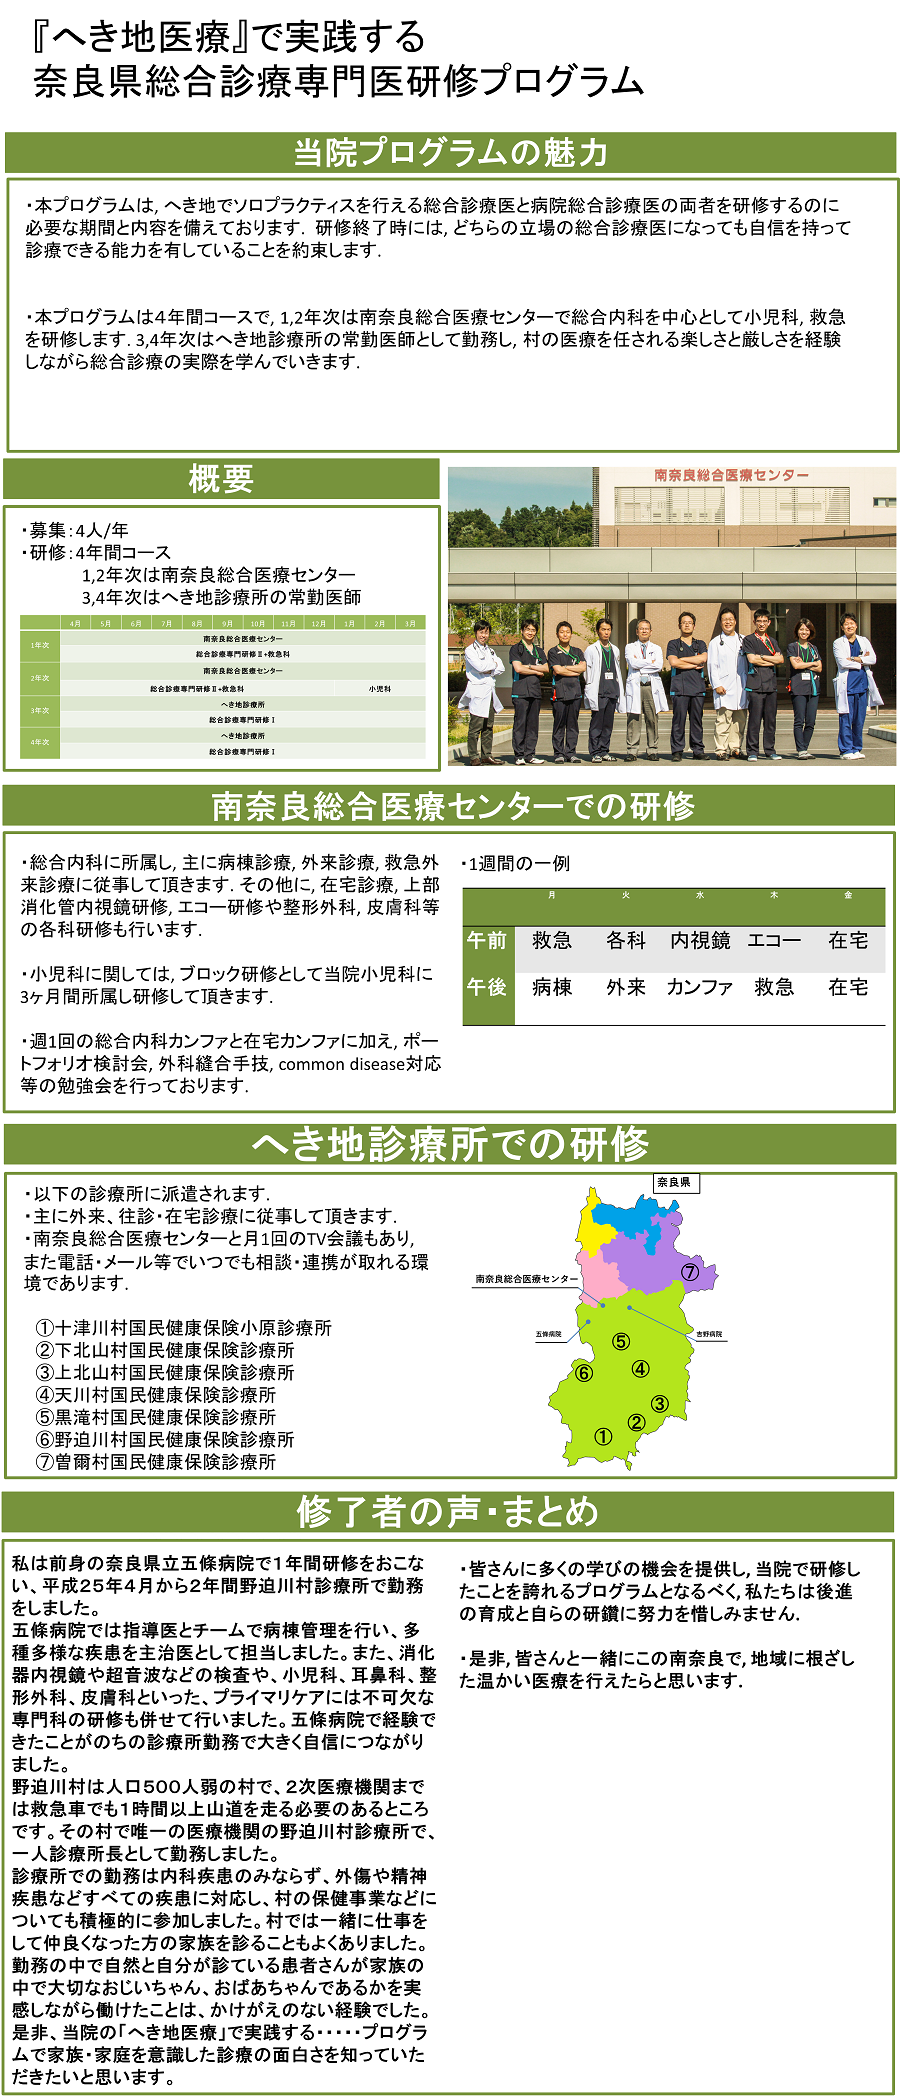 へき地医療』で実践する奈良県総合診療専門医研修プログラム